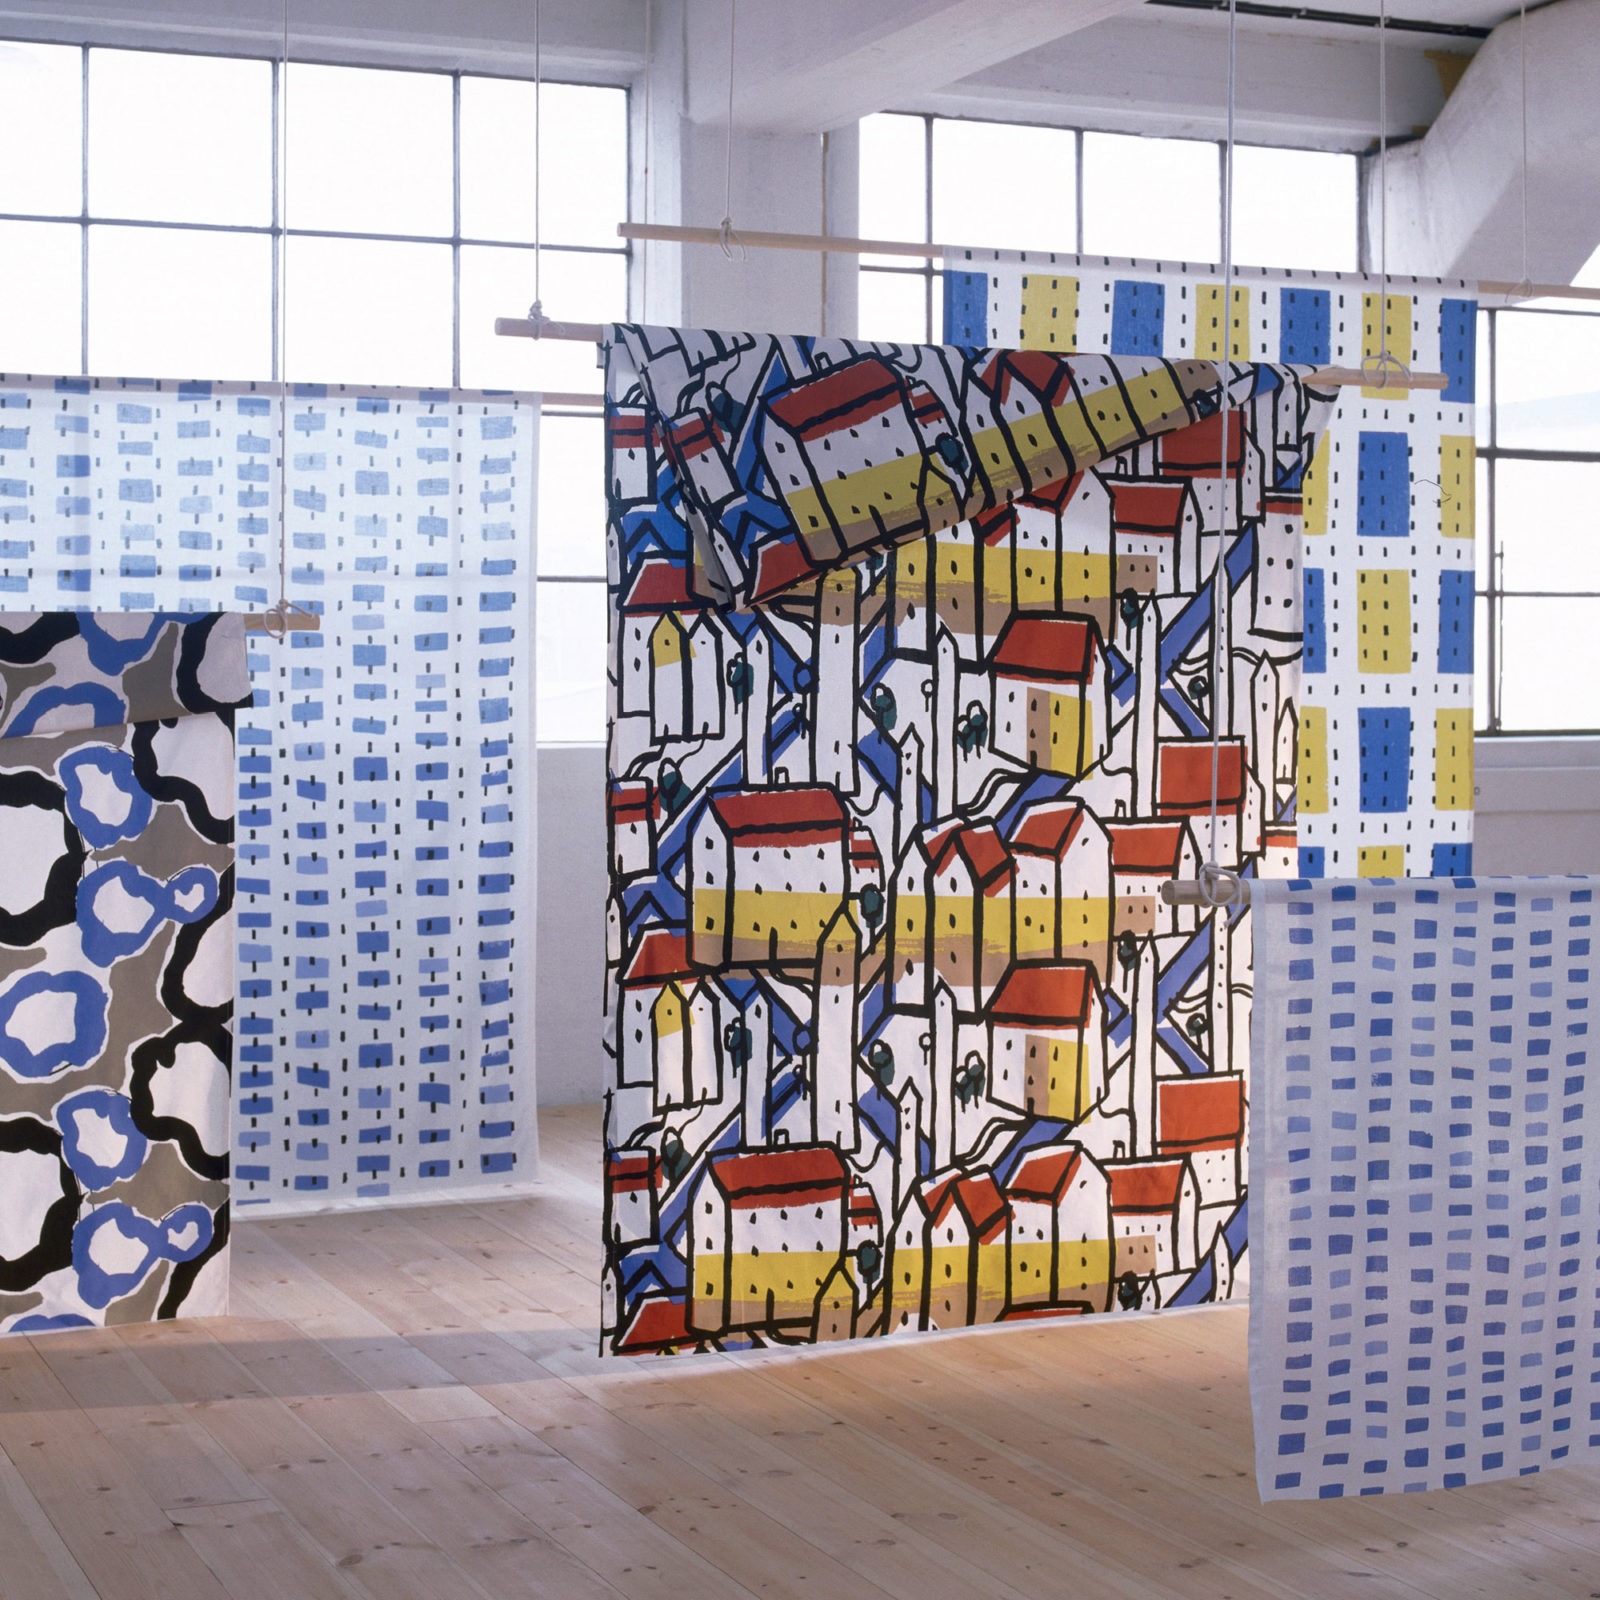 Fem textilier hänger från taket i en utställning, djärva mönster i en mängd olika färger.